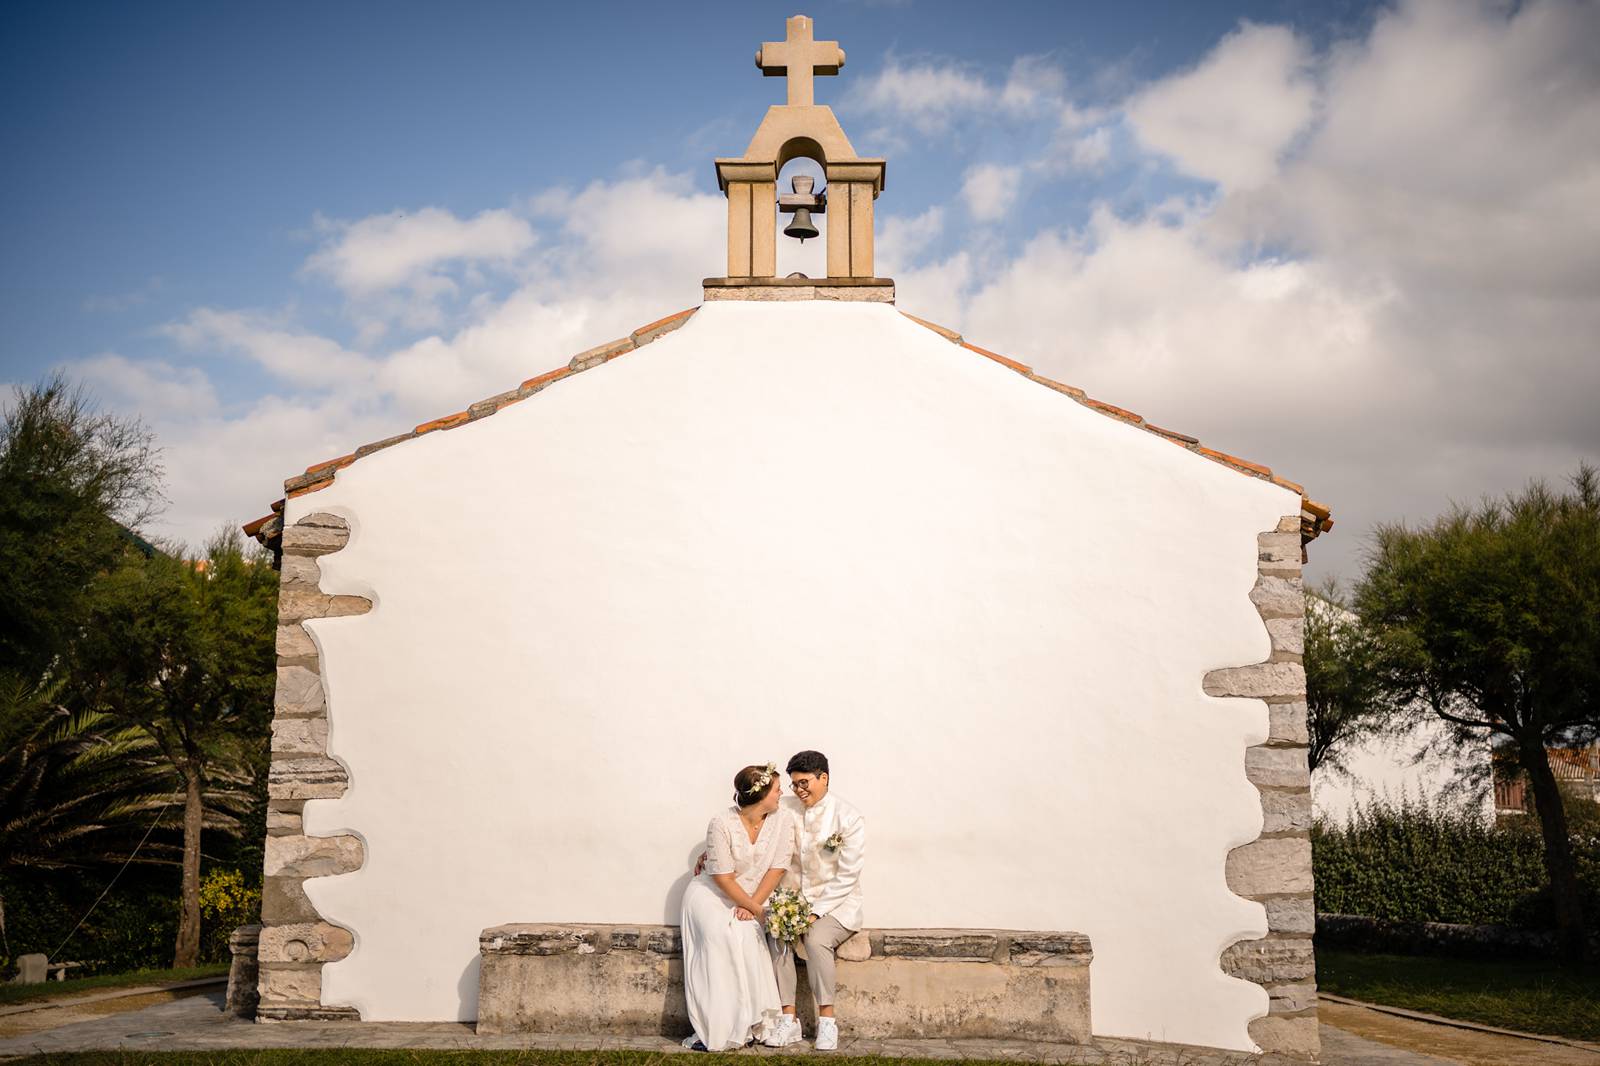 Le reportage mariage laïque franco-philippin de M+J à Bidart puis de la cérémonie Laïque à la Ferme Inharria au Pays Basque.